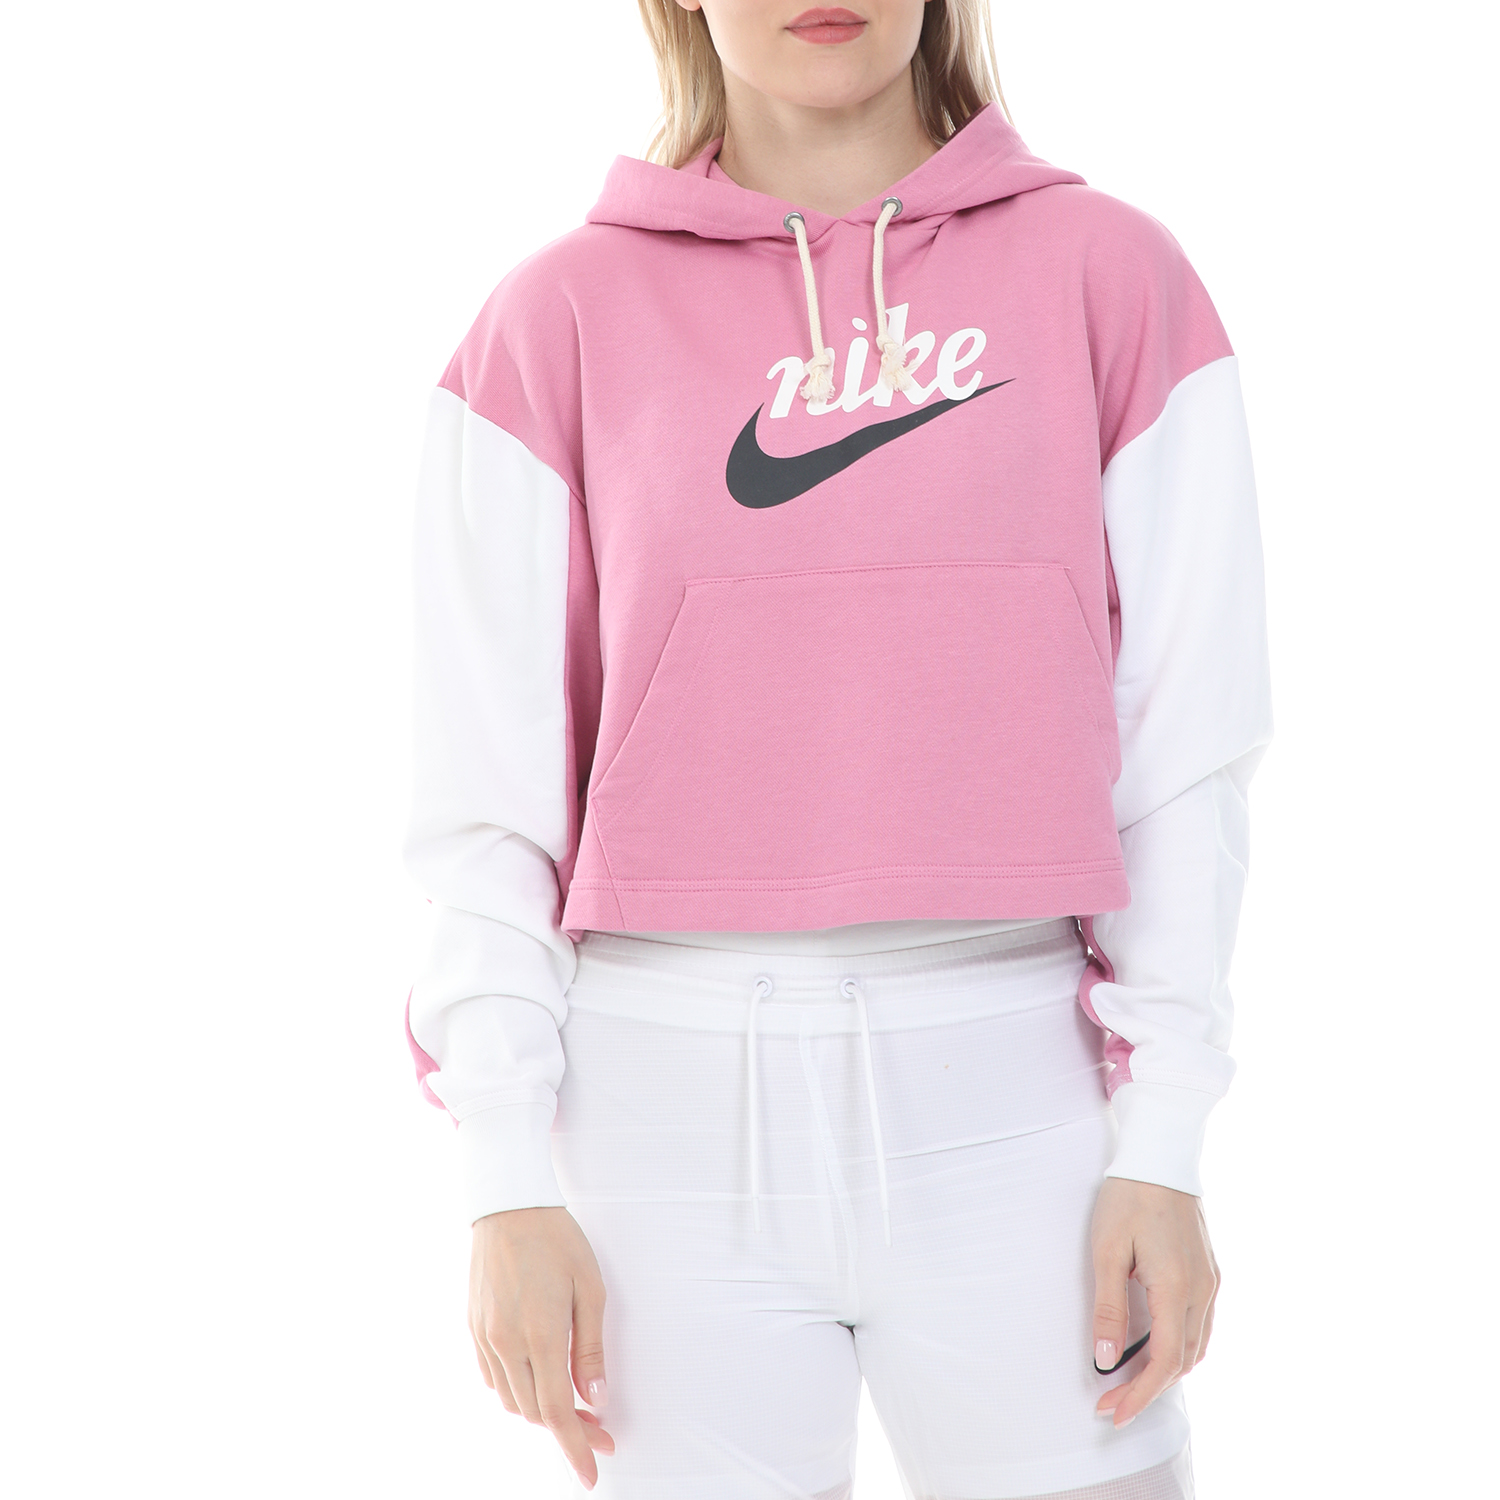 Γυναικεία/Ρούχα/Αθλητικά/Φούτερ-Μακρυμάνικα NIKE - Γυναικεία cropped φούτερ μπλούζα NIKE NSW VRSTY HOODIE FT ροζ λευκή